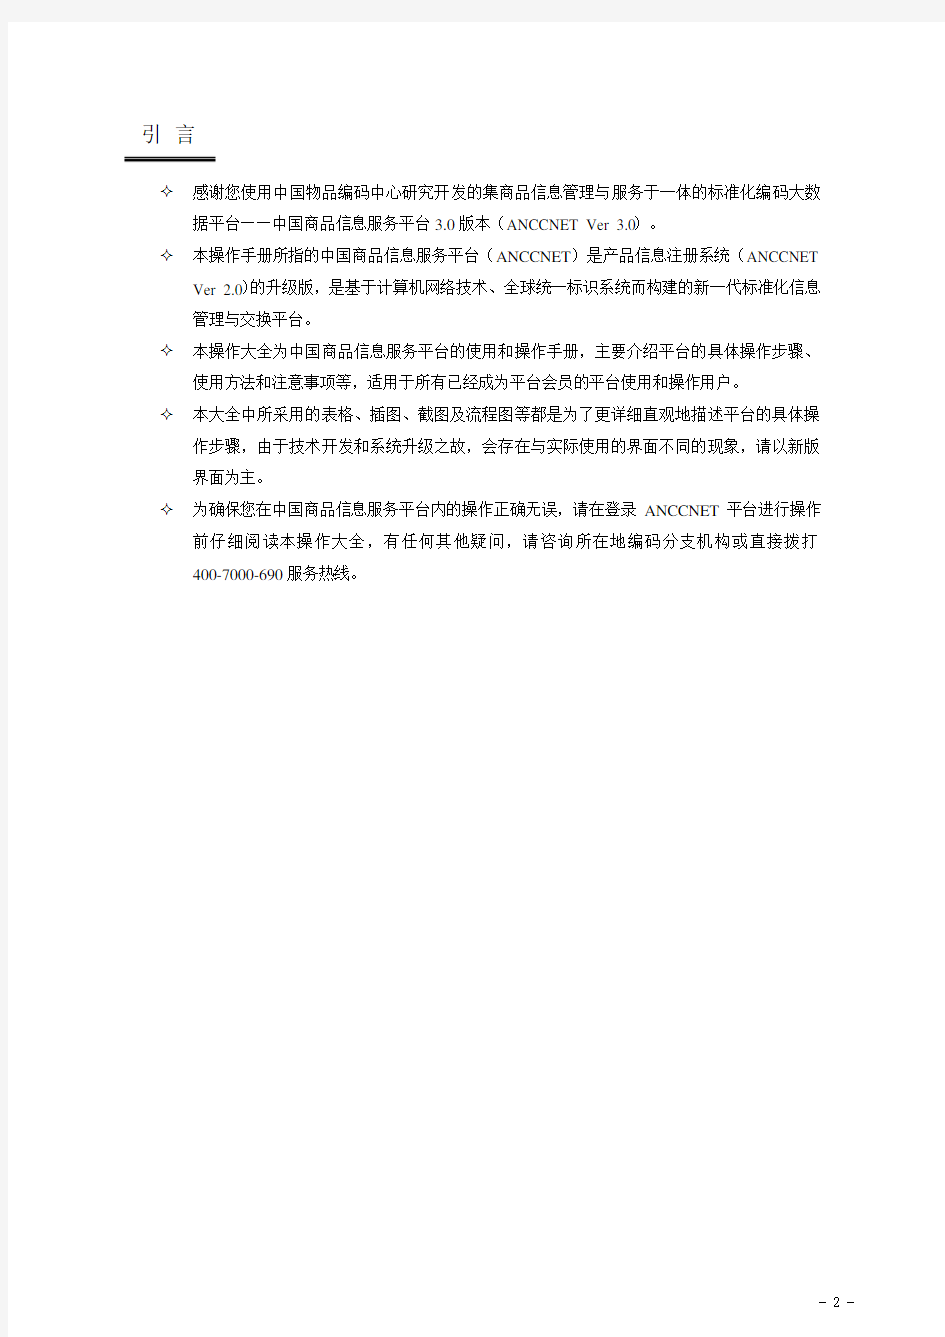 中国商品信息服务平台用户操作大全(2015)